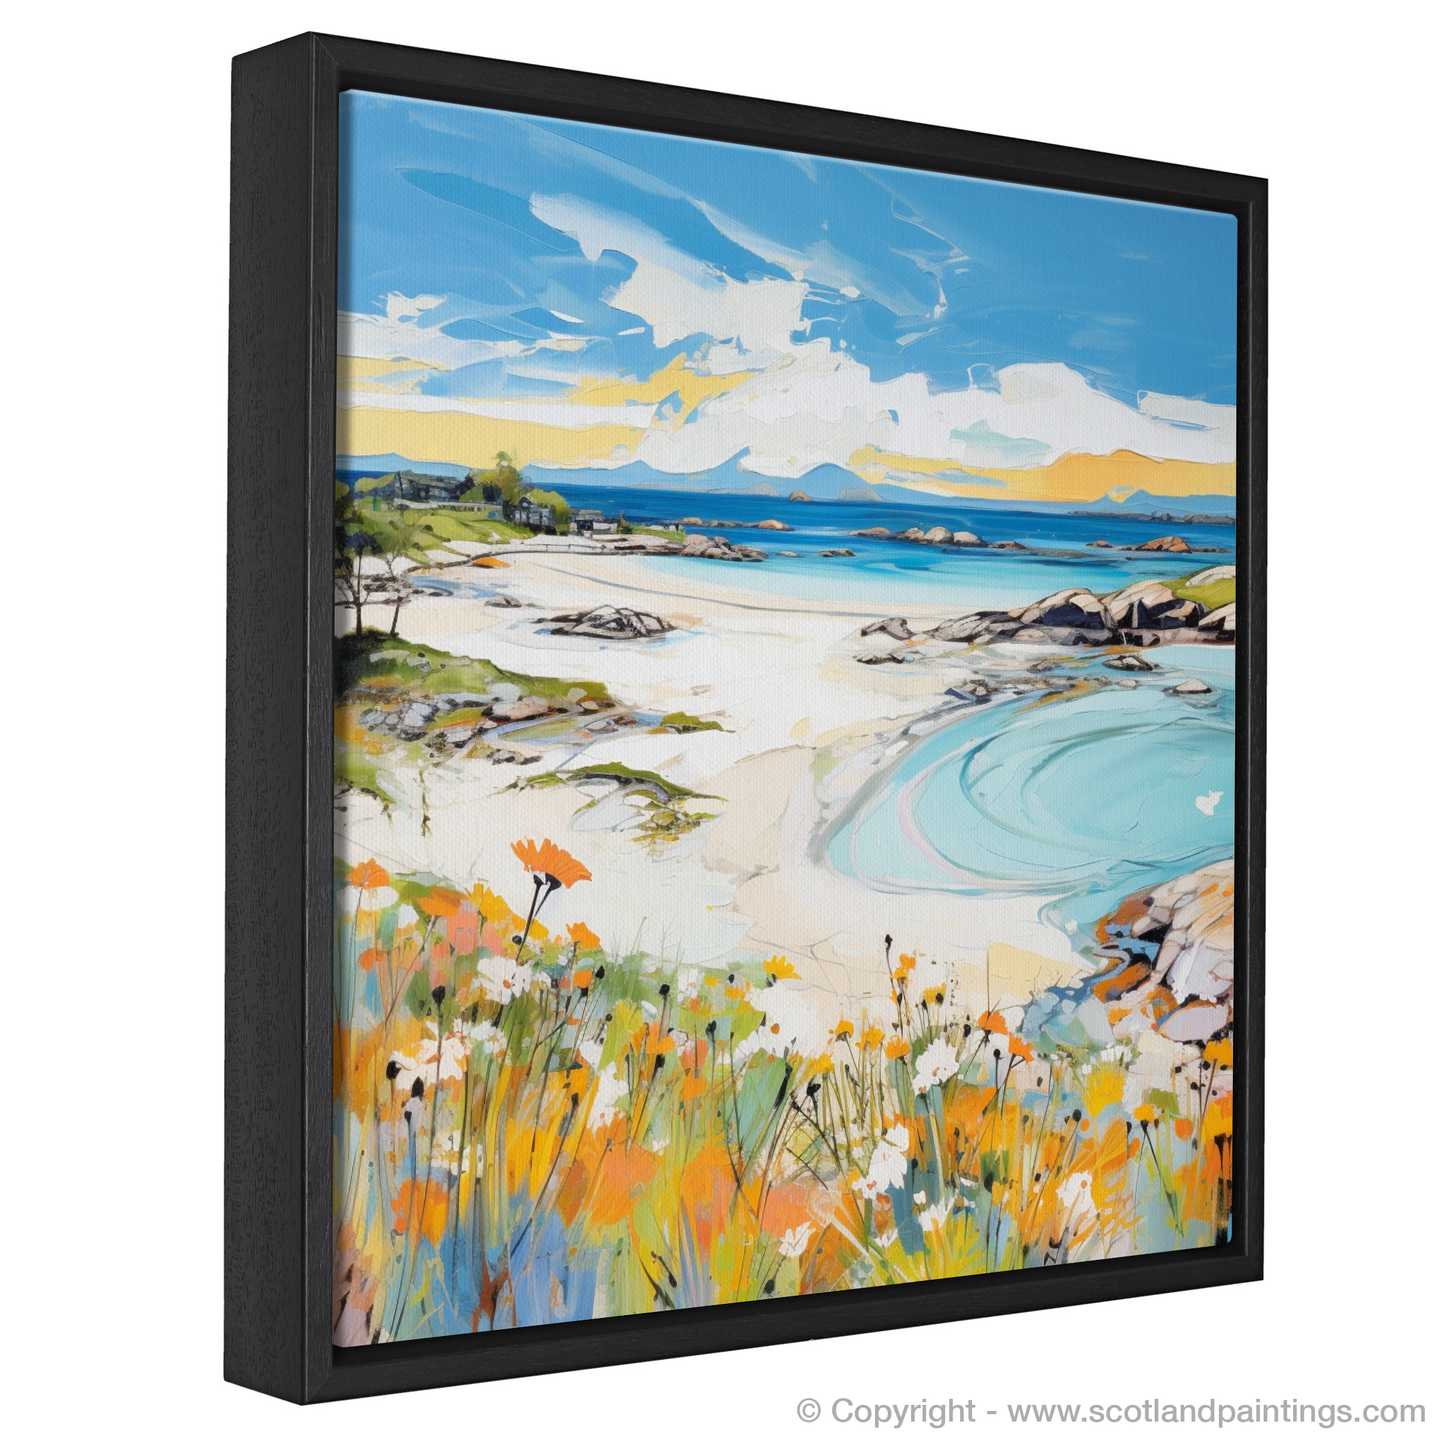 Painting and Art Print of Arisaig Beach, Arisaig in summer entitled "Summer Serenade at Arisaig Beach".